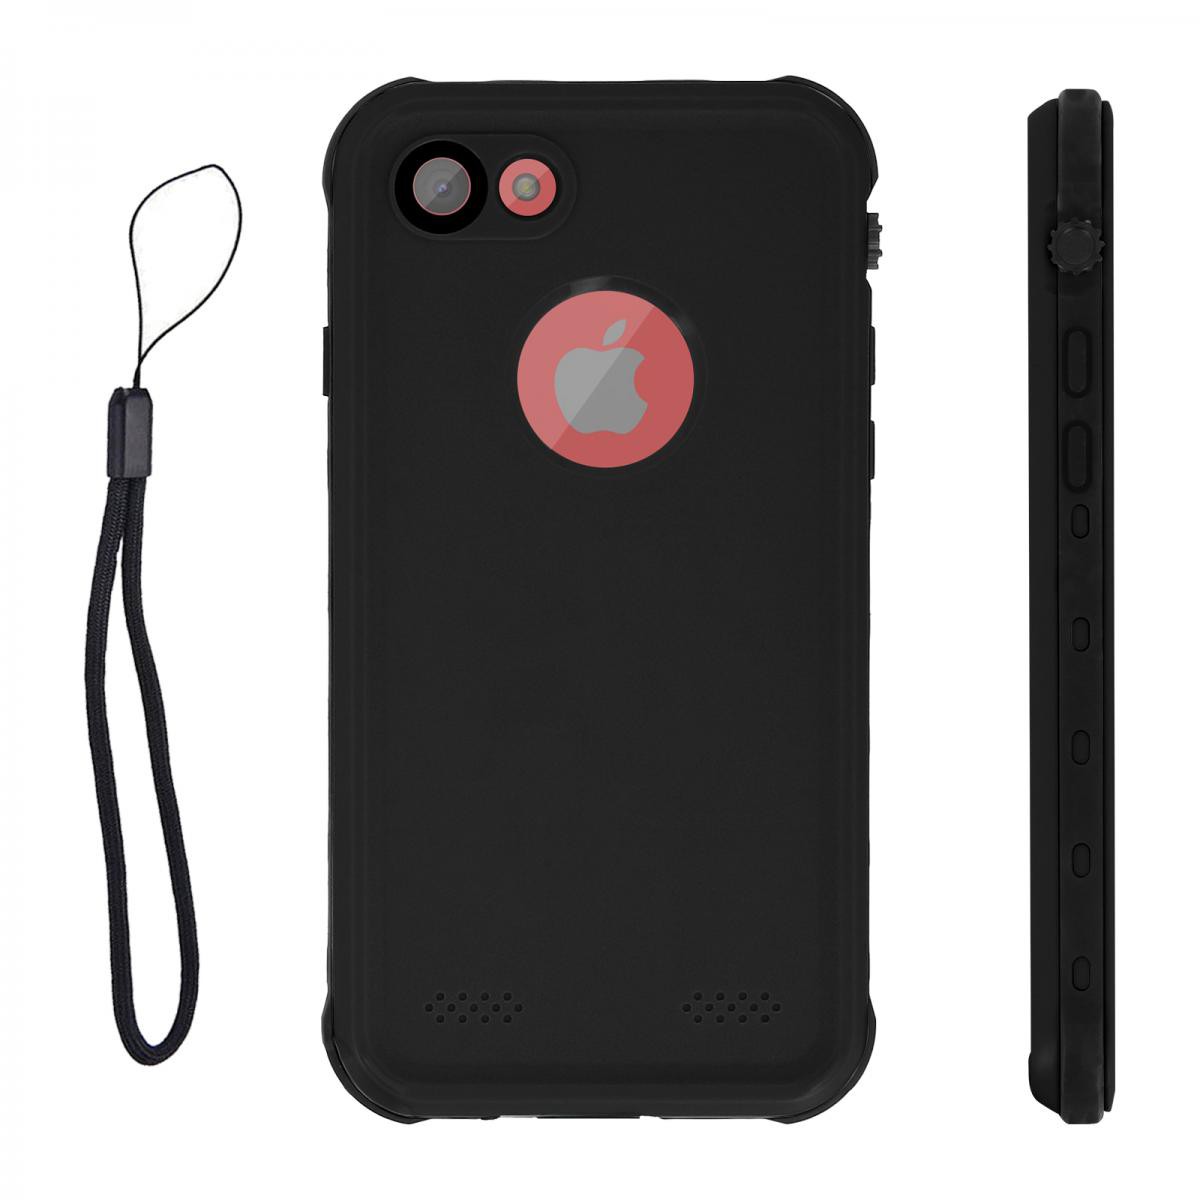 Avizar - Coque iPhone SE 2020 / 8 / 7 Waterproof 2m et Antichoc Protection Intégrale Noir - Coque, étui smartphone